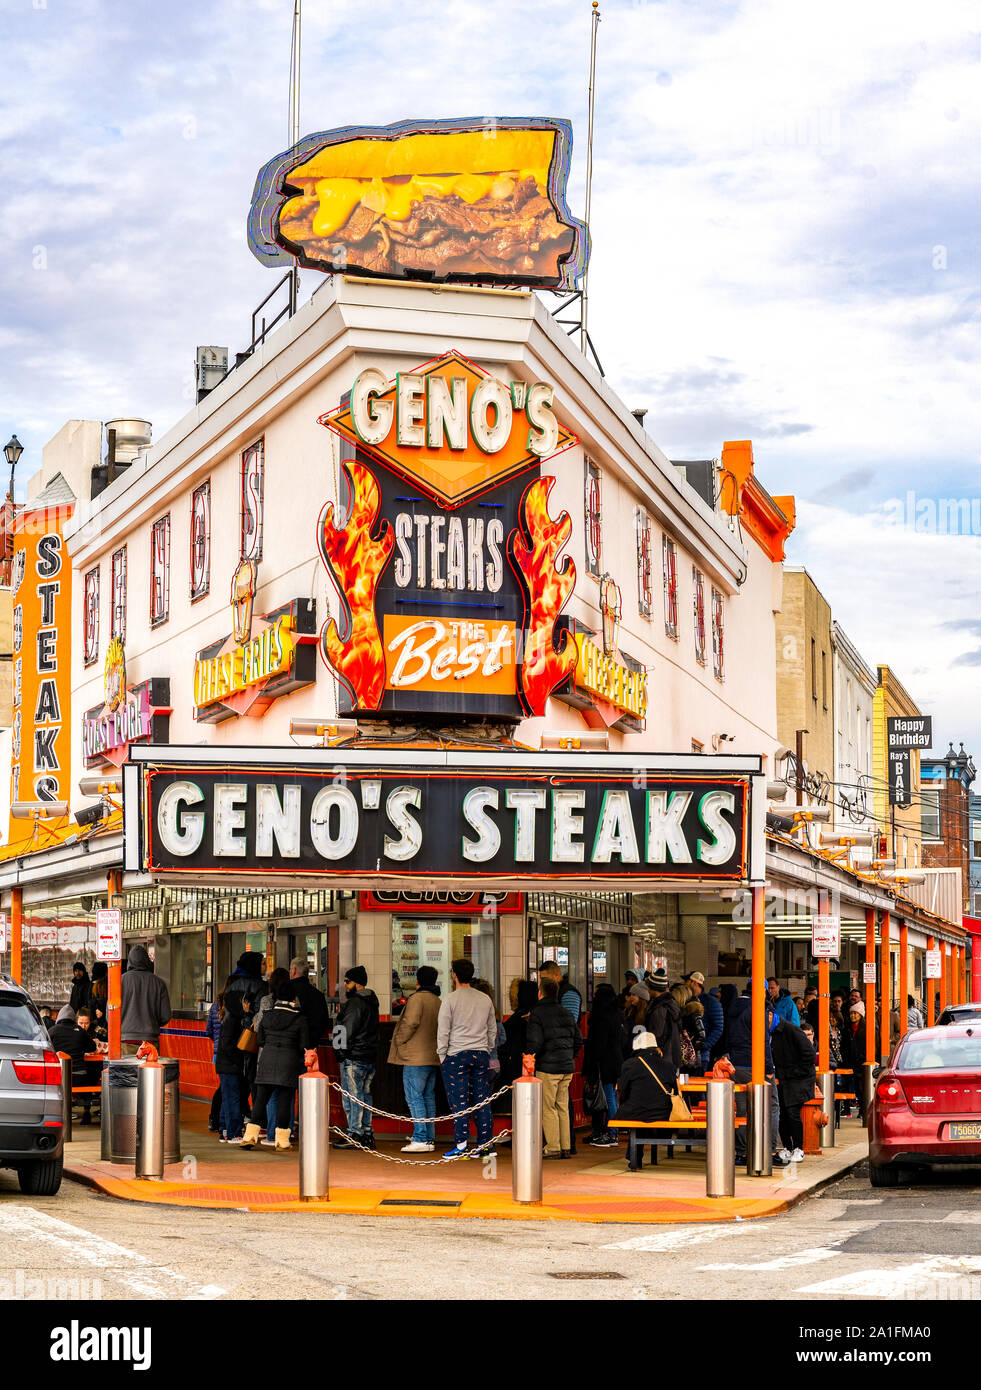 Philadelphie, Pennsylvanie - 17 Février 2019 : Le célèbre restaurant Geno's steaks au Sud de Philadelphie. Banque D'Images